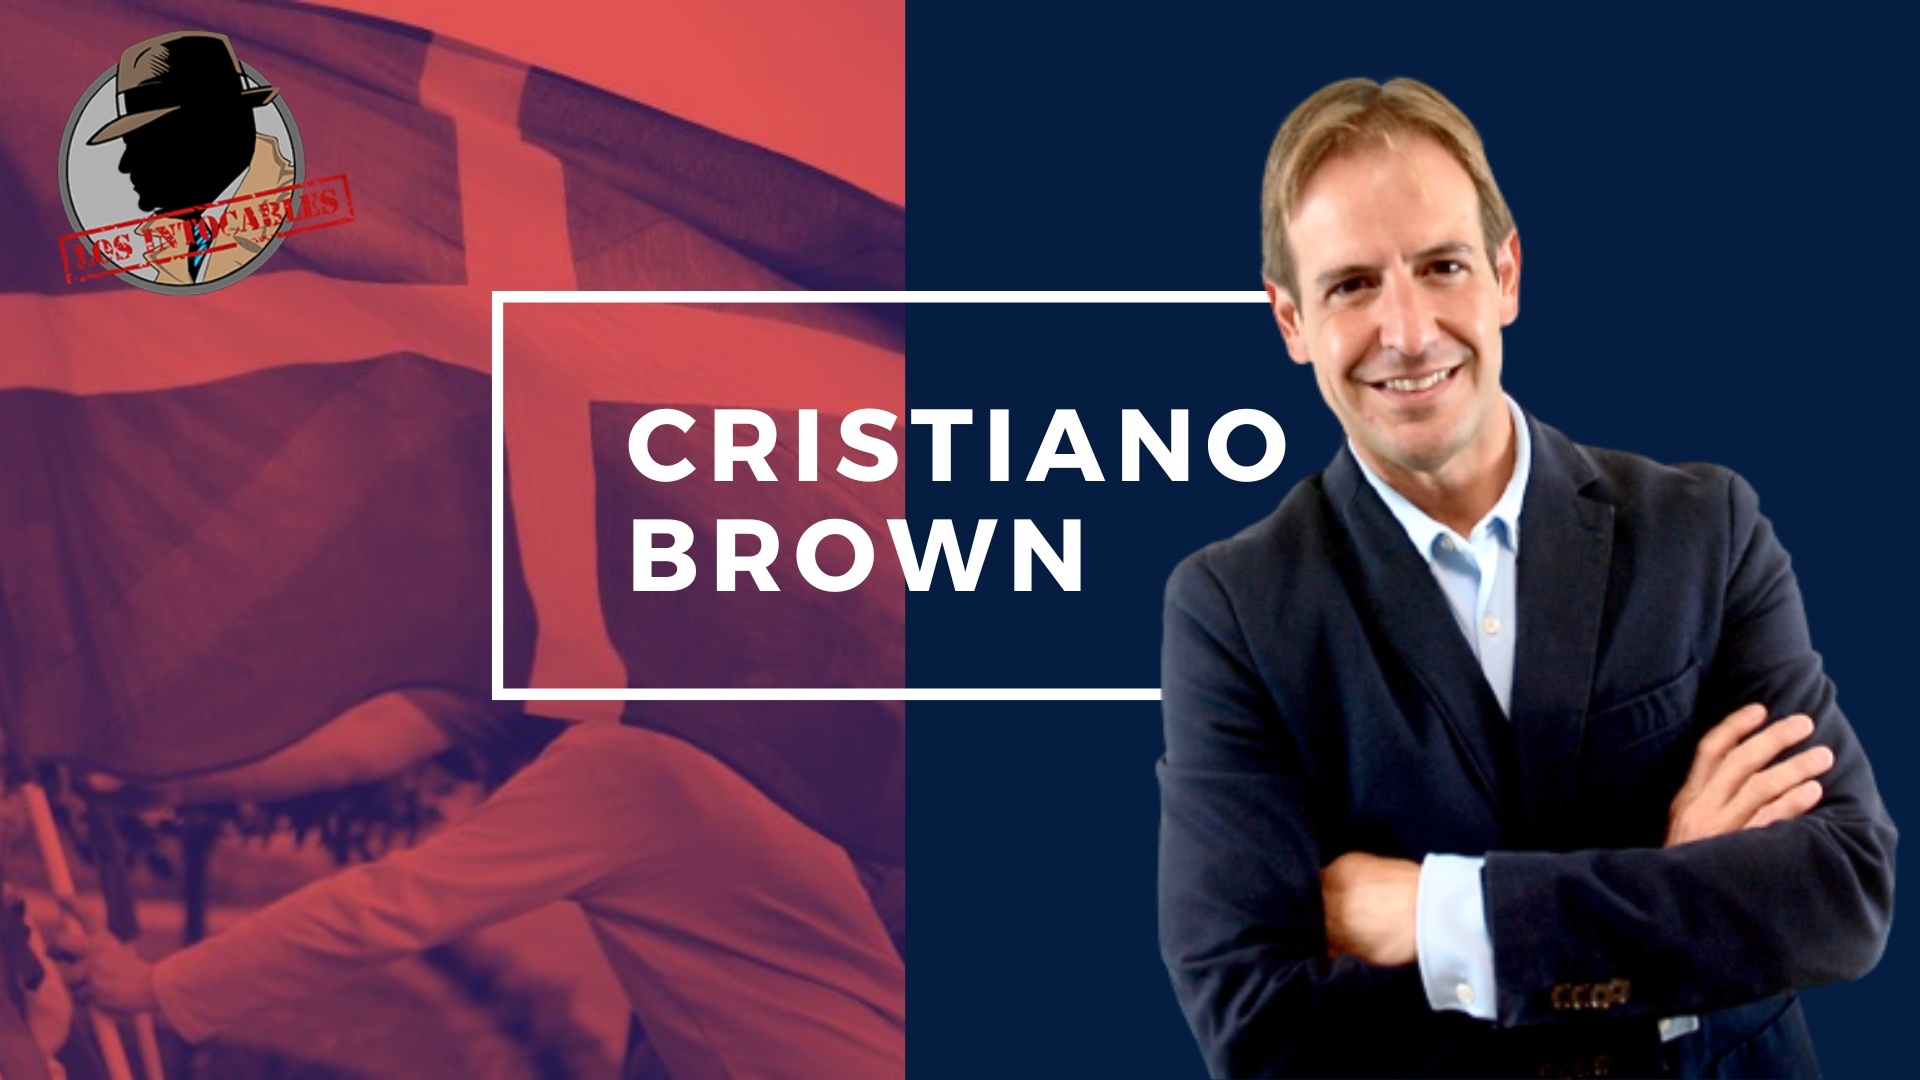 Cristiano Brown